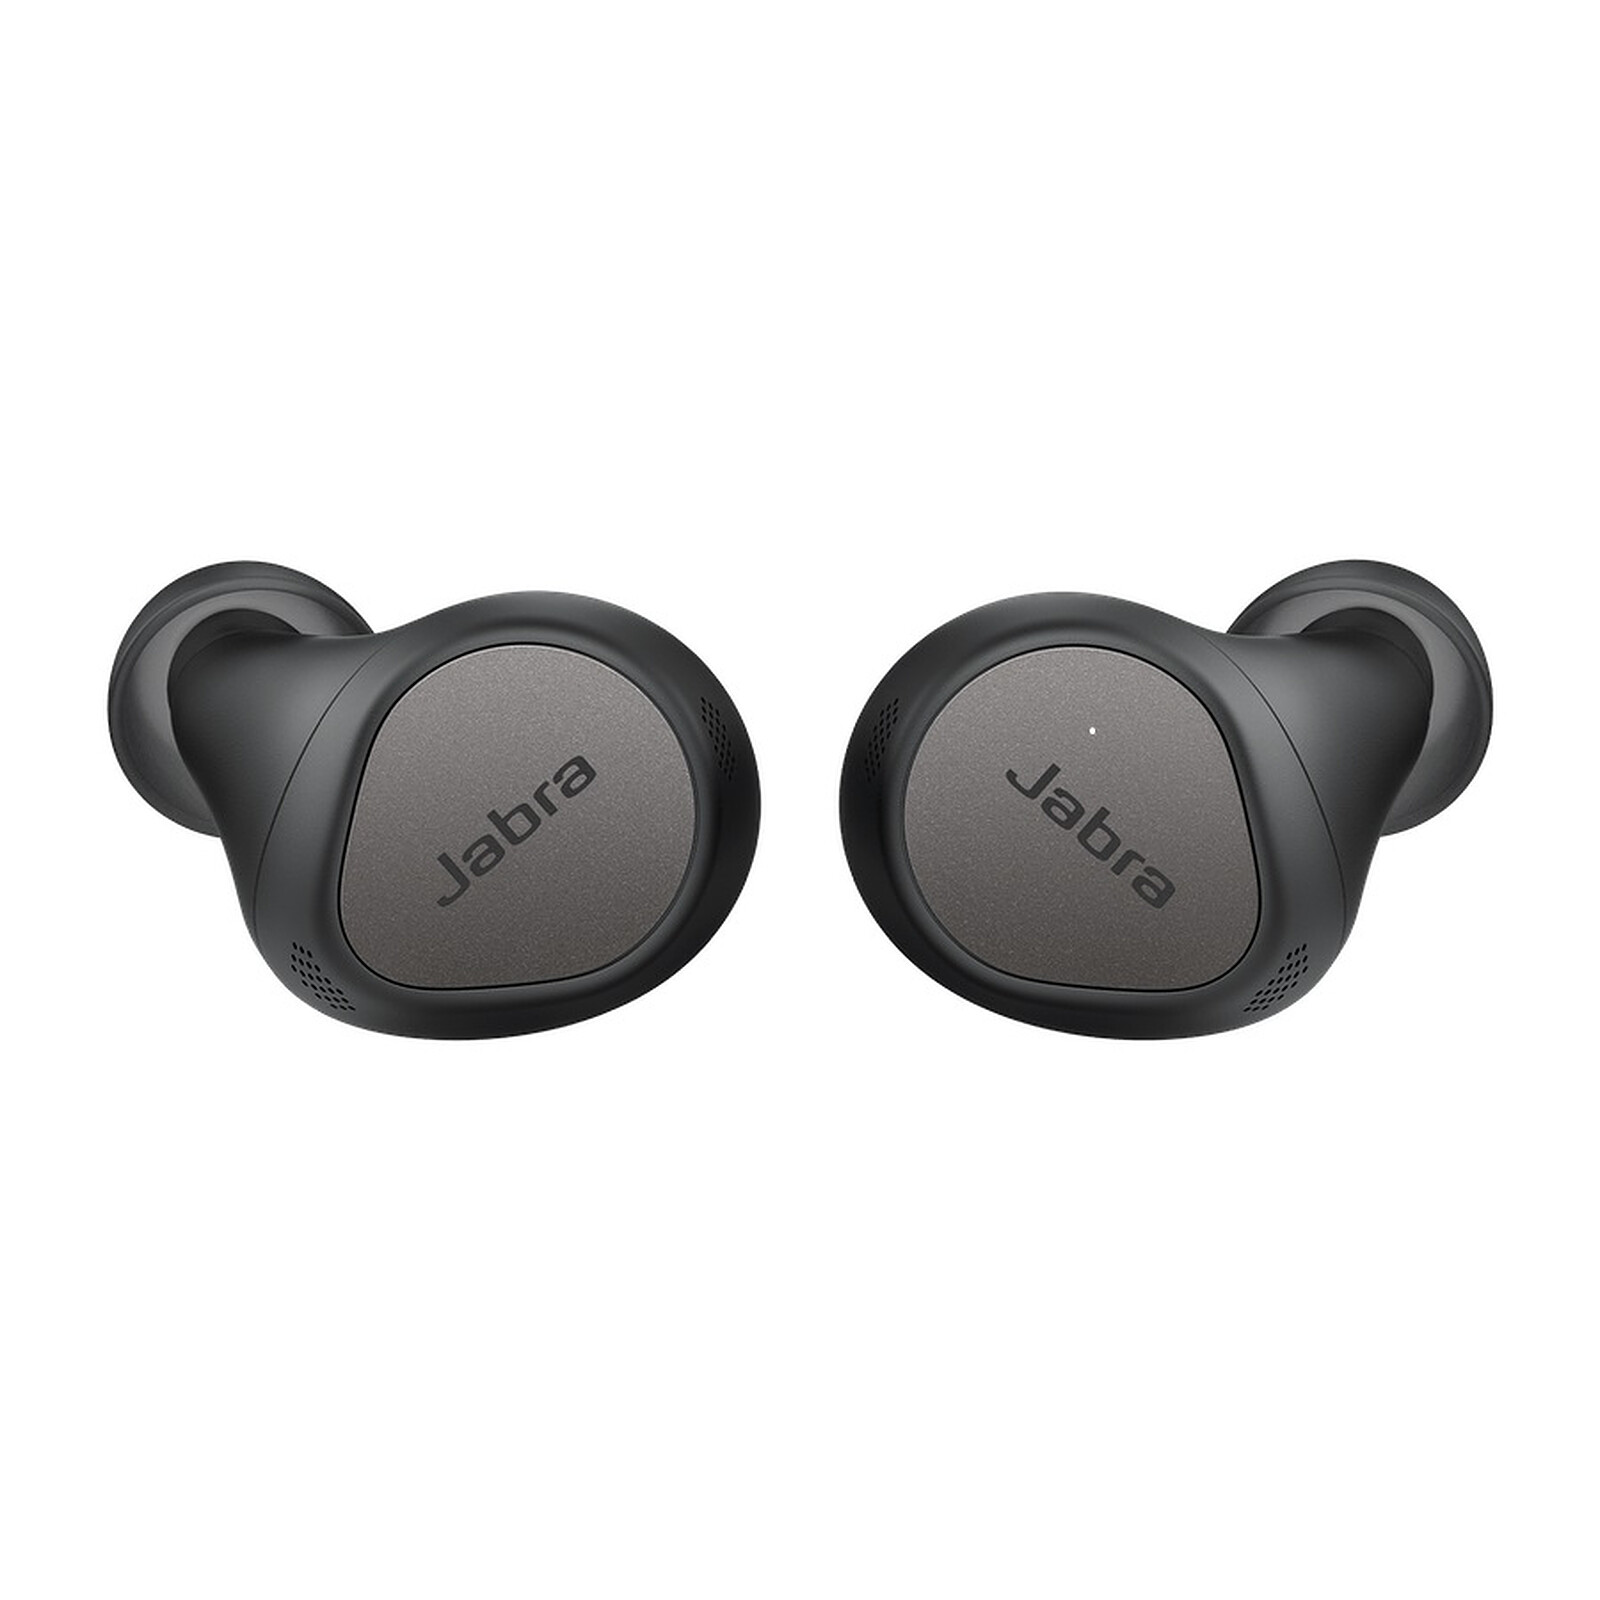 Siete auriculares inalámbricos para disfrutar de la música en movimiento:  Sony, Apple, Jabra y más